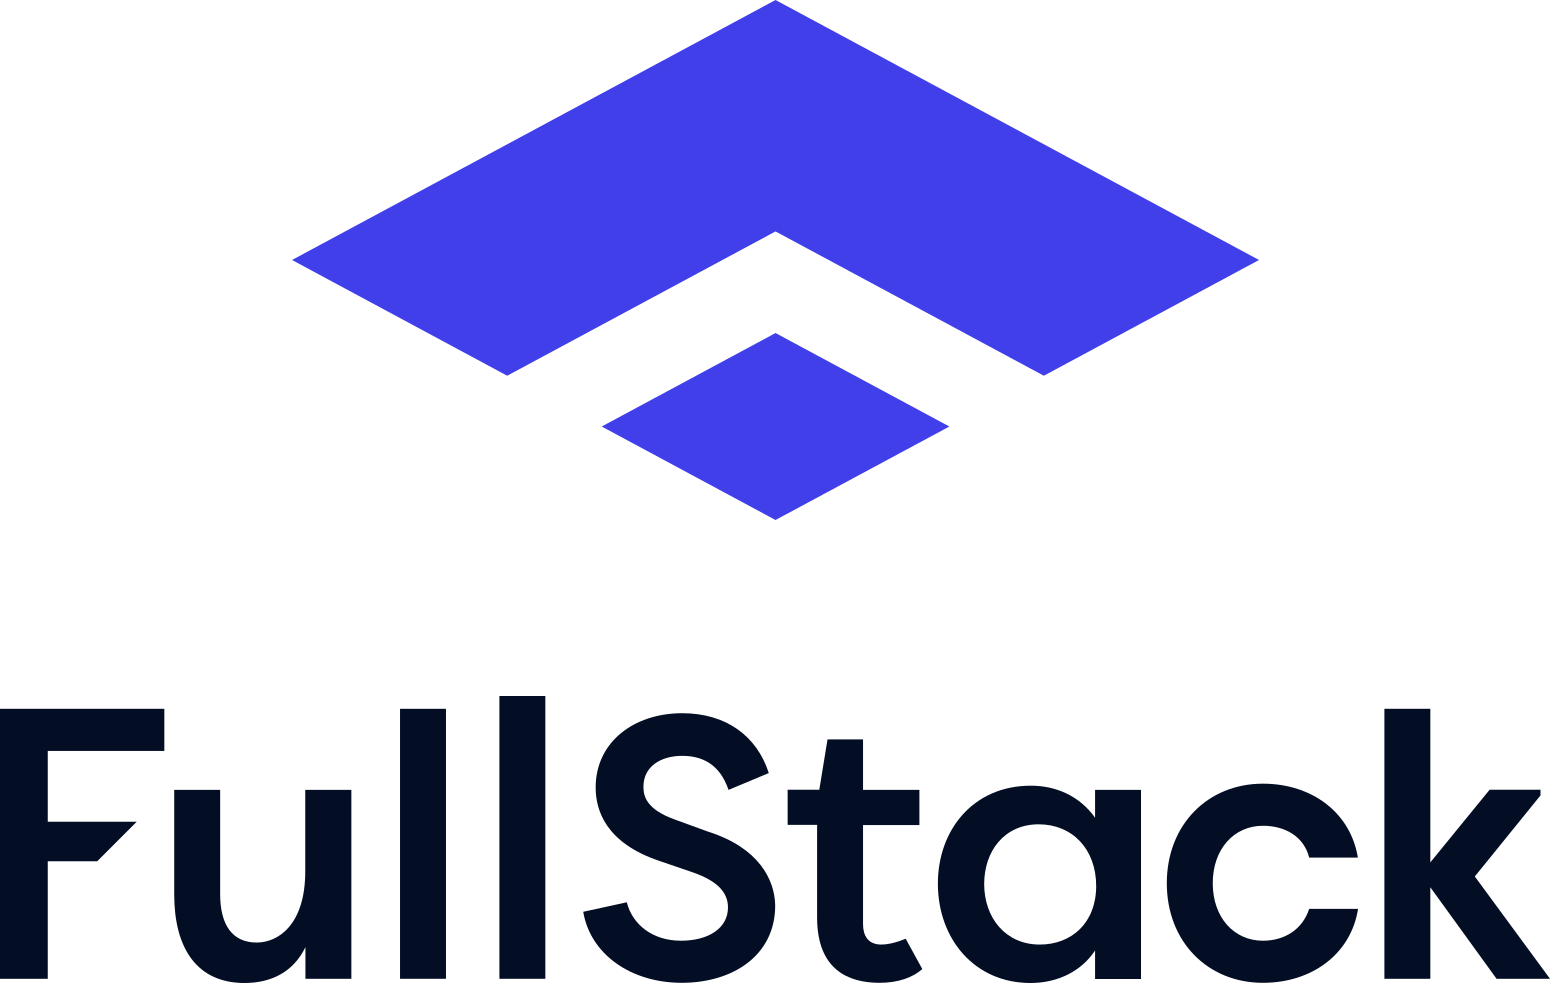 FullStack Labs company logo